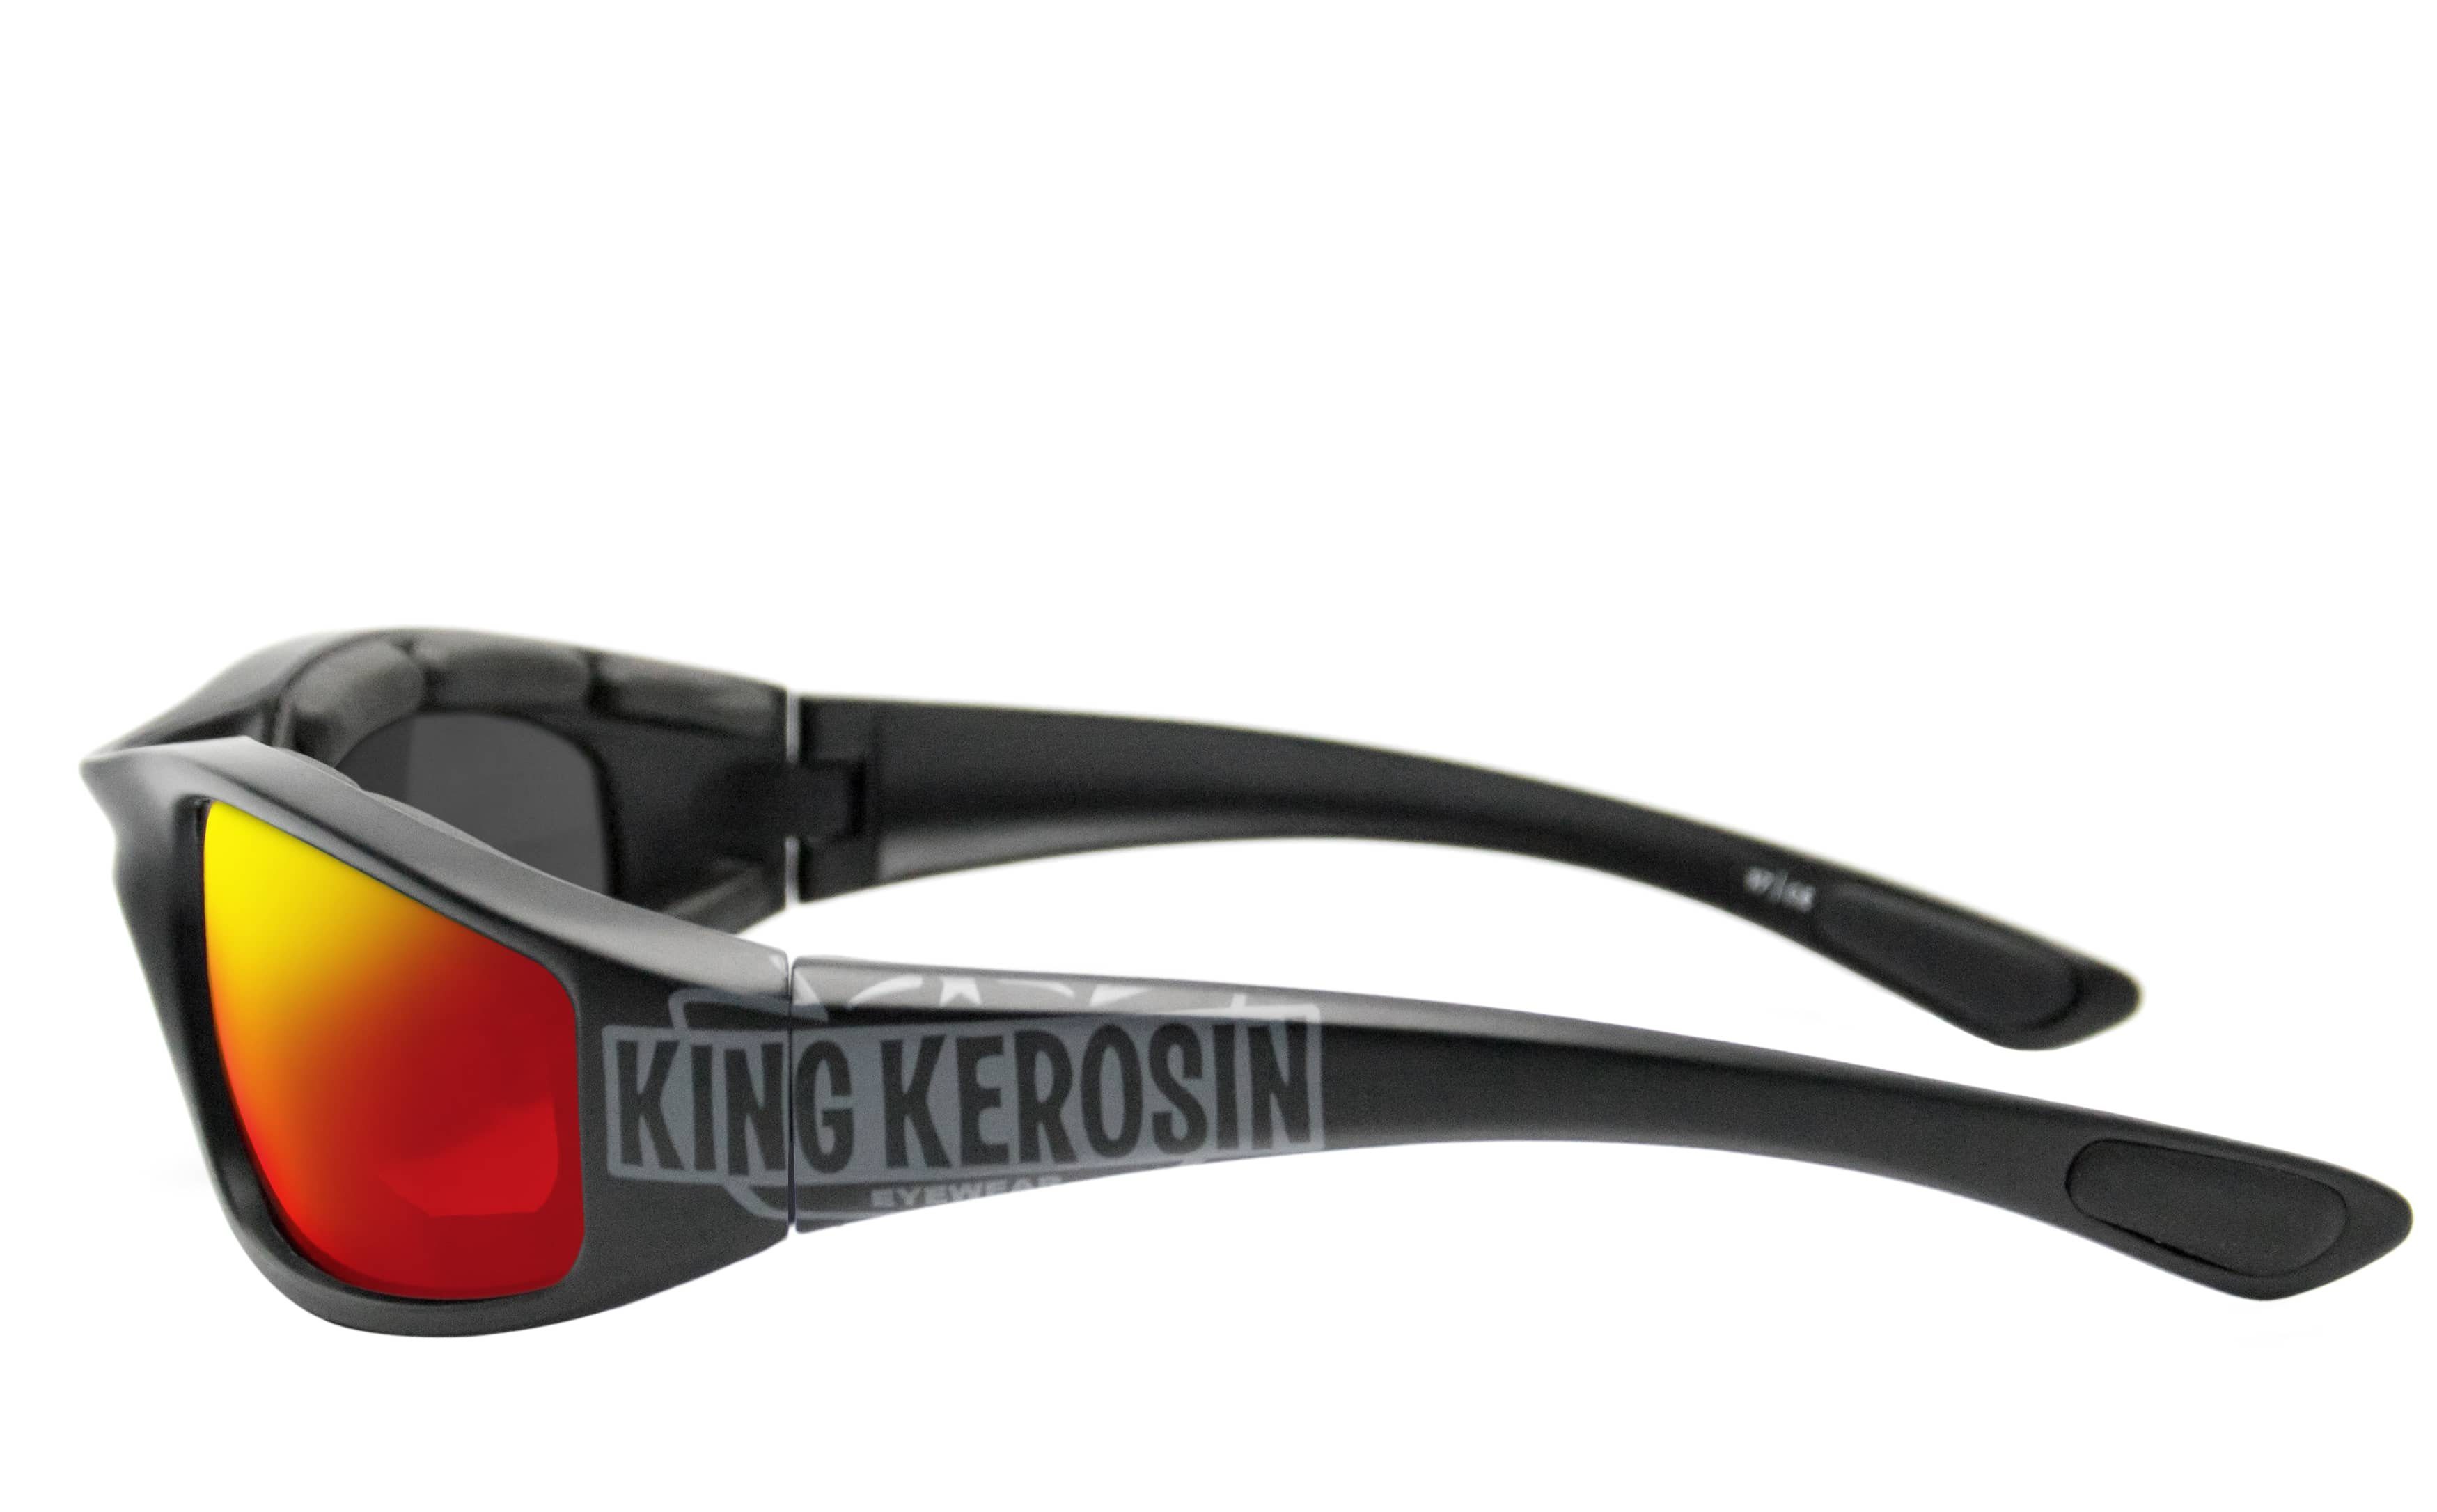 durch gepolstert, Steinschlagbeständig Kunststoff-Sicherheitsglas KingKerosin Motorradbrille KK140